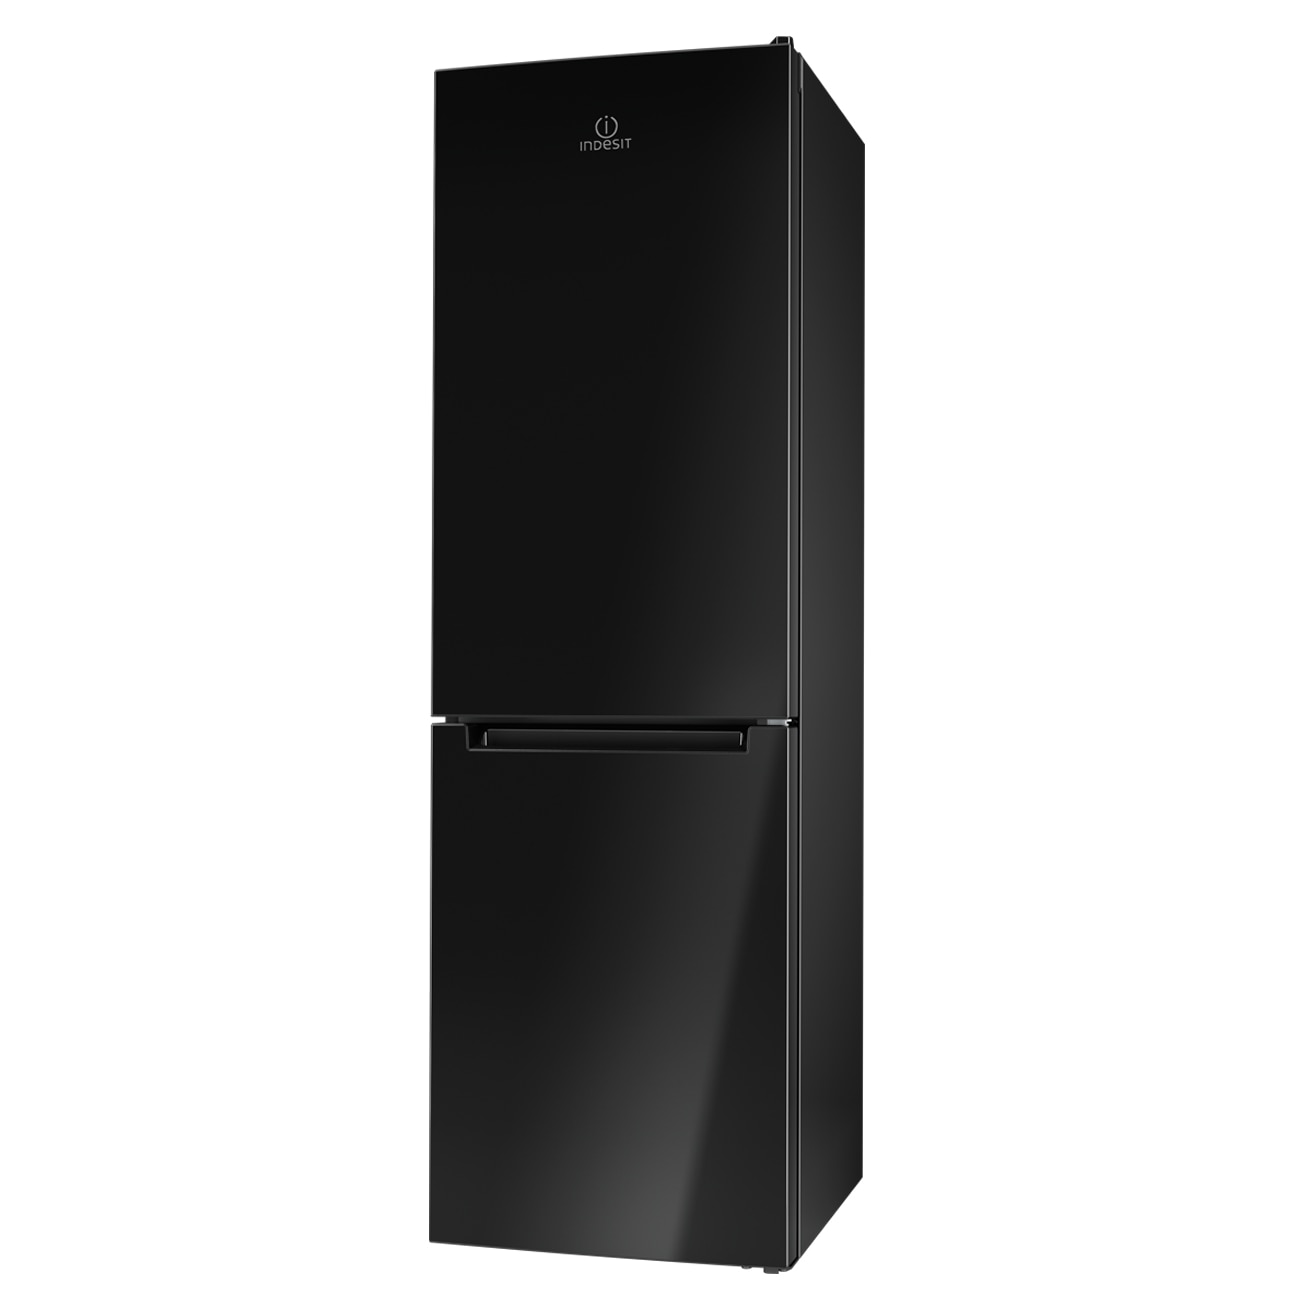 Хладилник Indesit LI8 FF2 K с обем от 301 л.